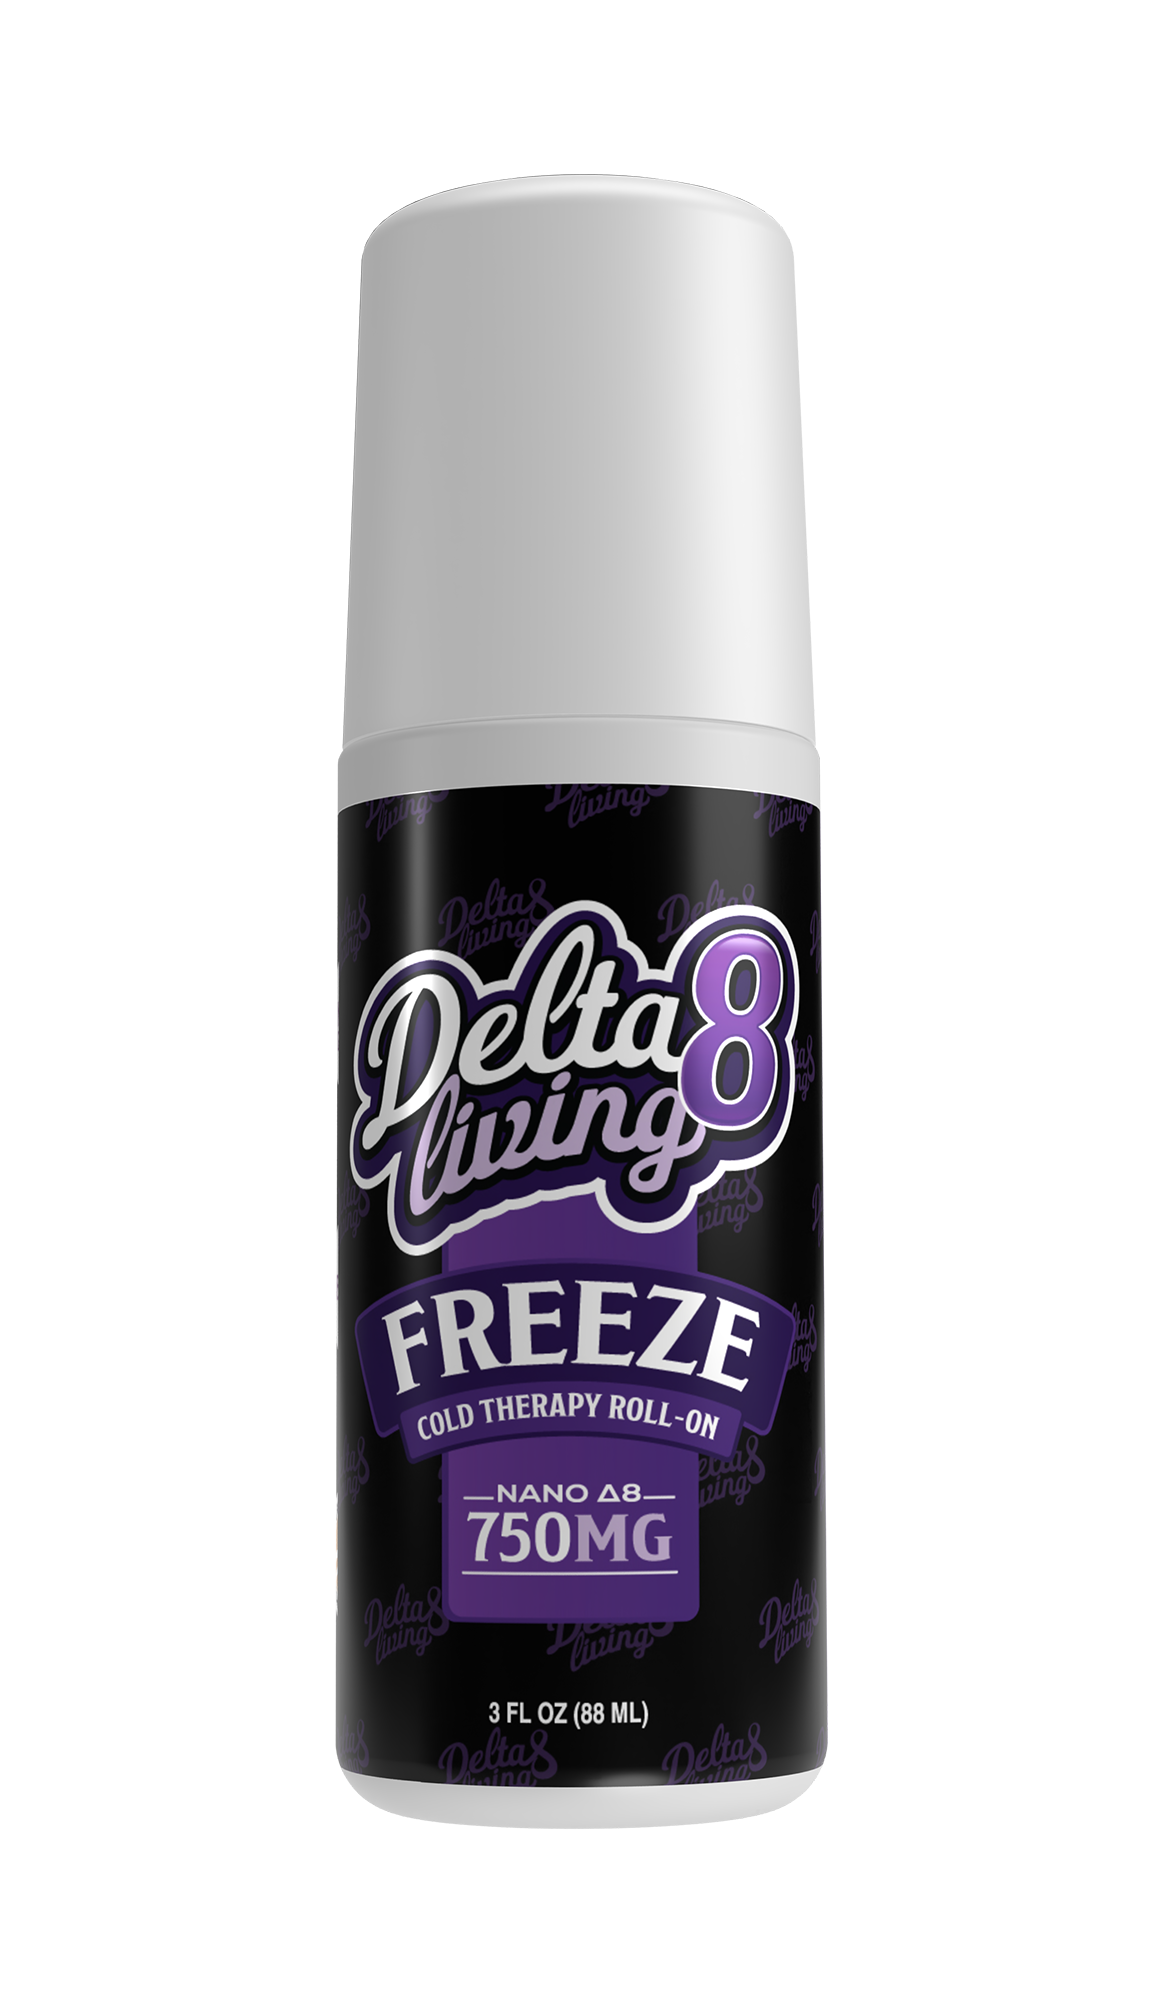 Delta-8 Freeze